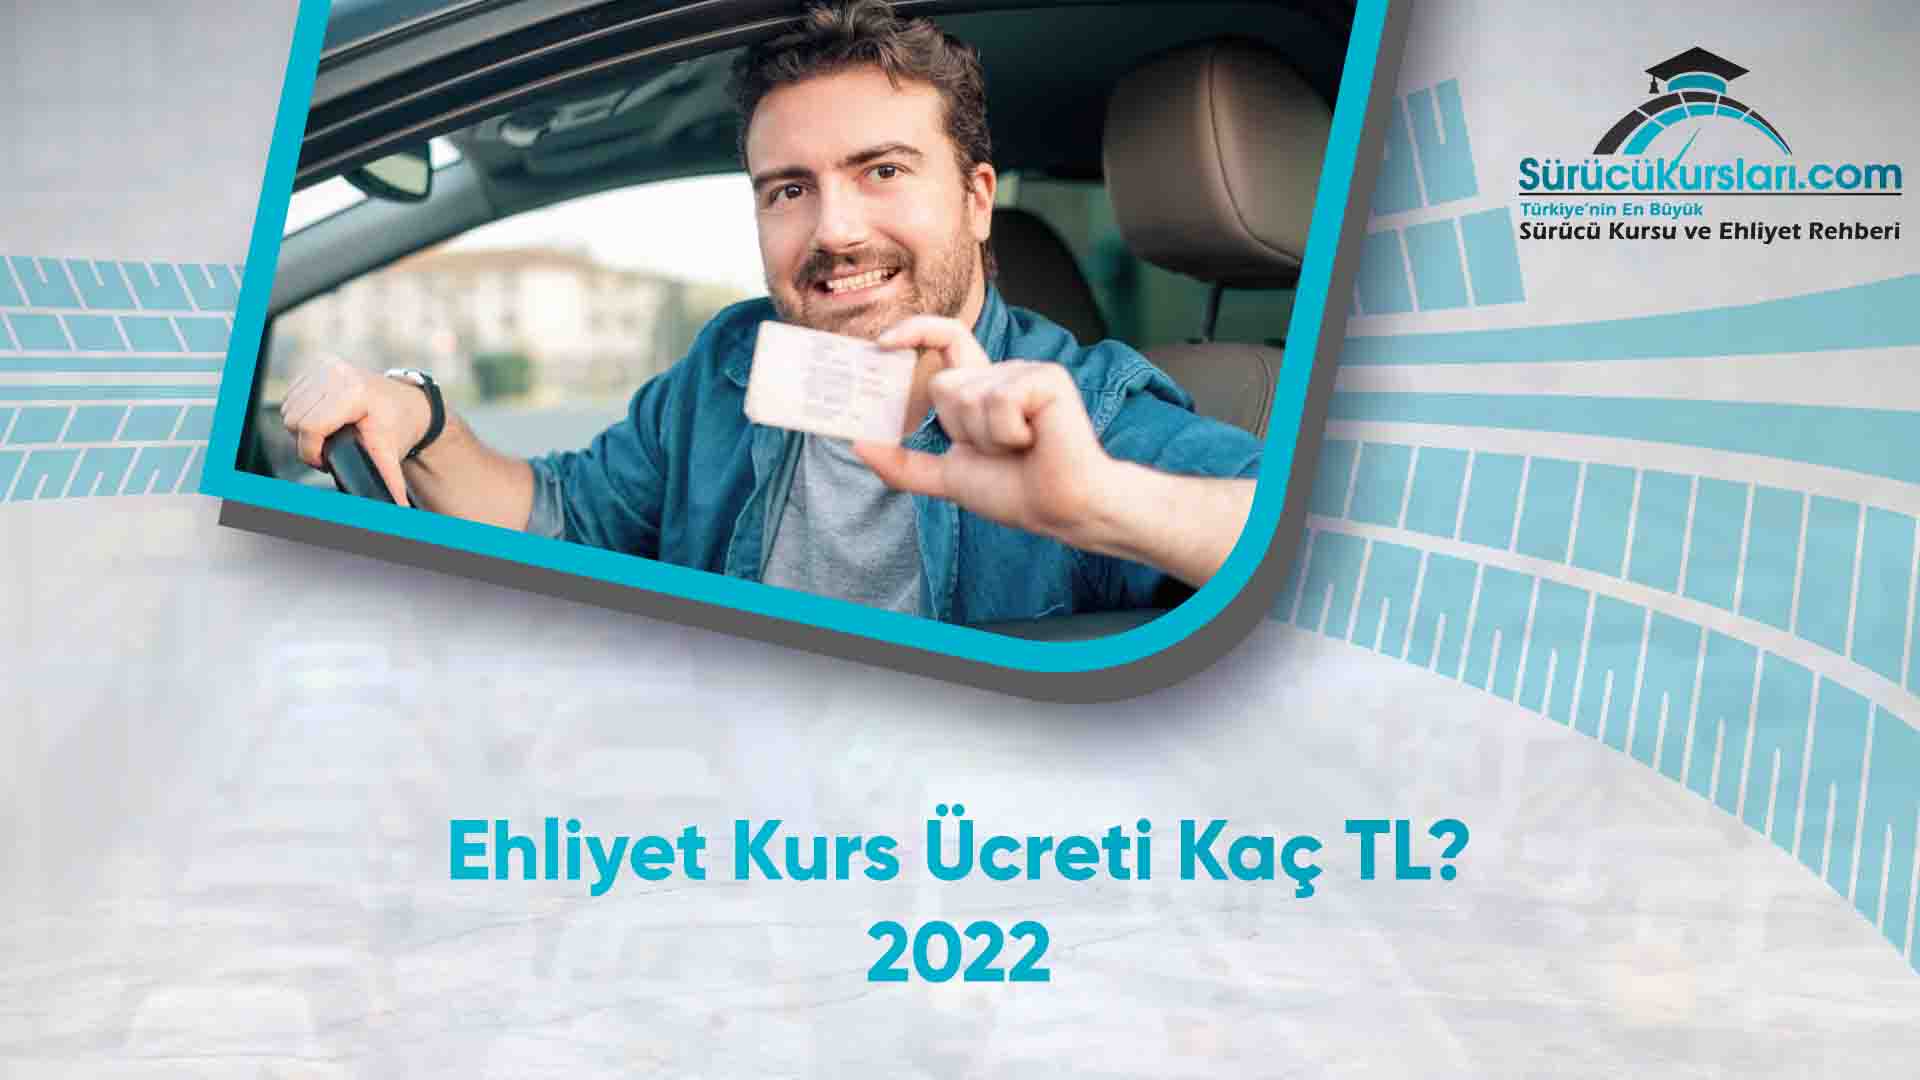 Ehliyet Kurs Ücreti Kaç TL - 2022